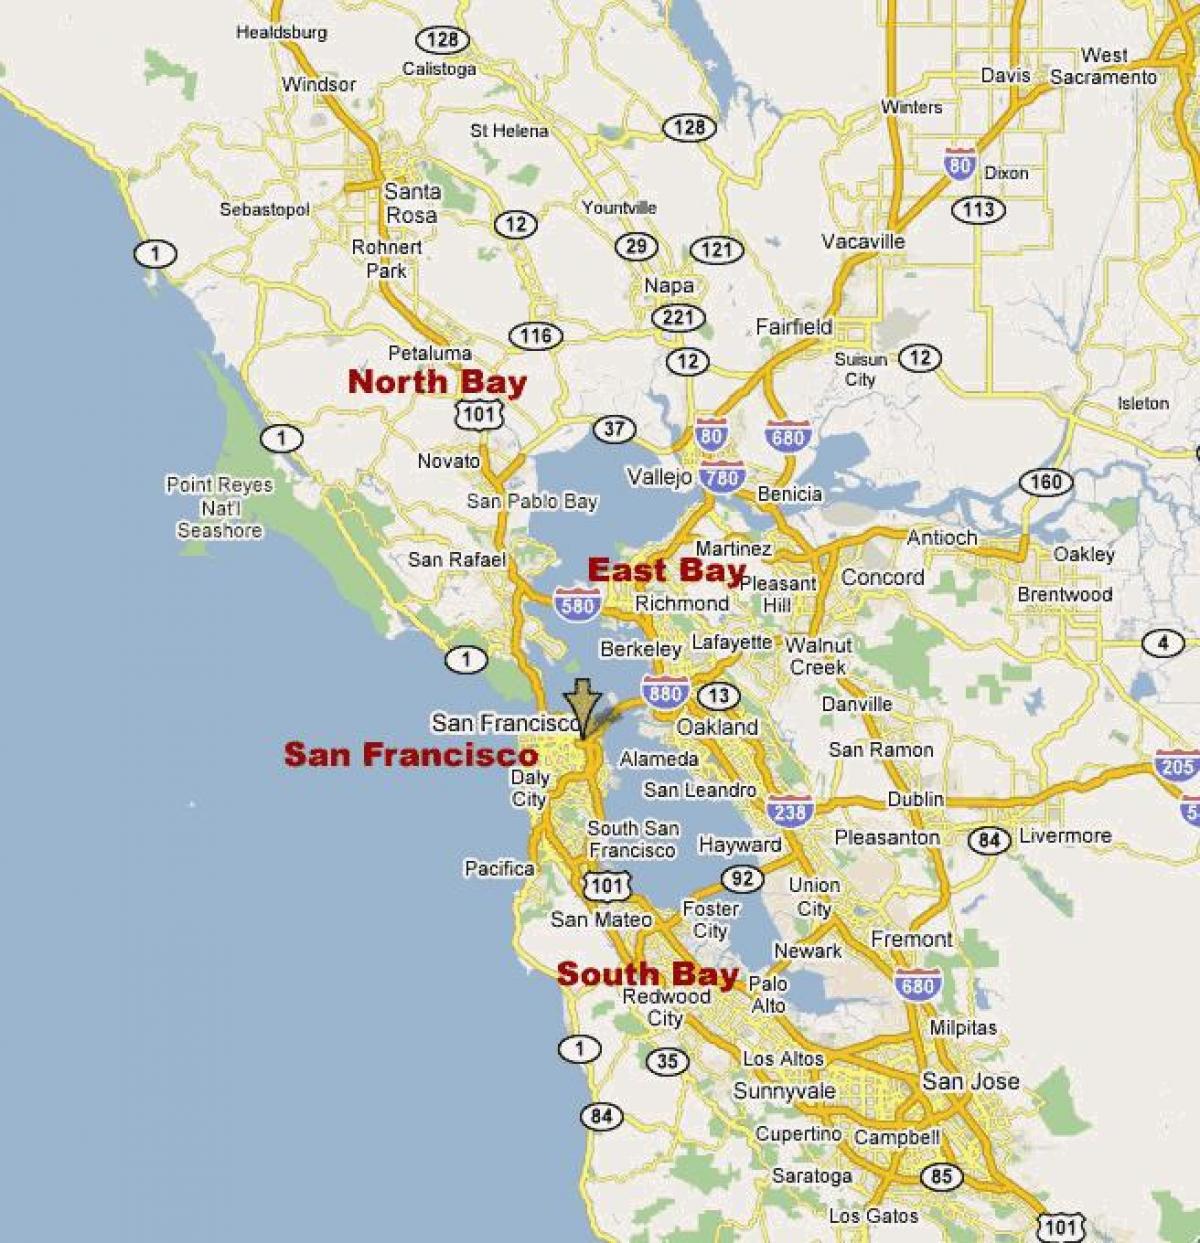 северна калифорнија bay област на мапата